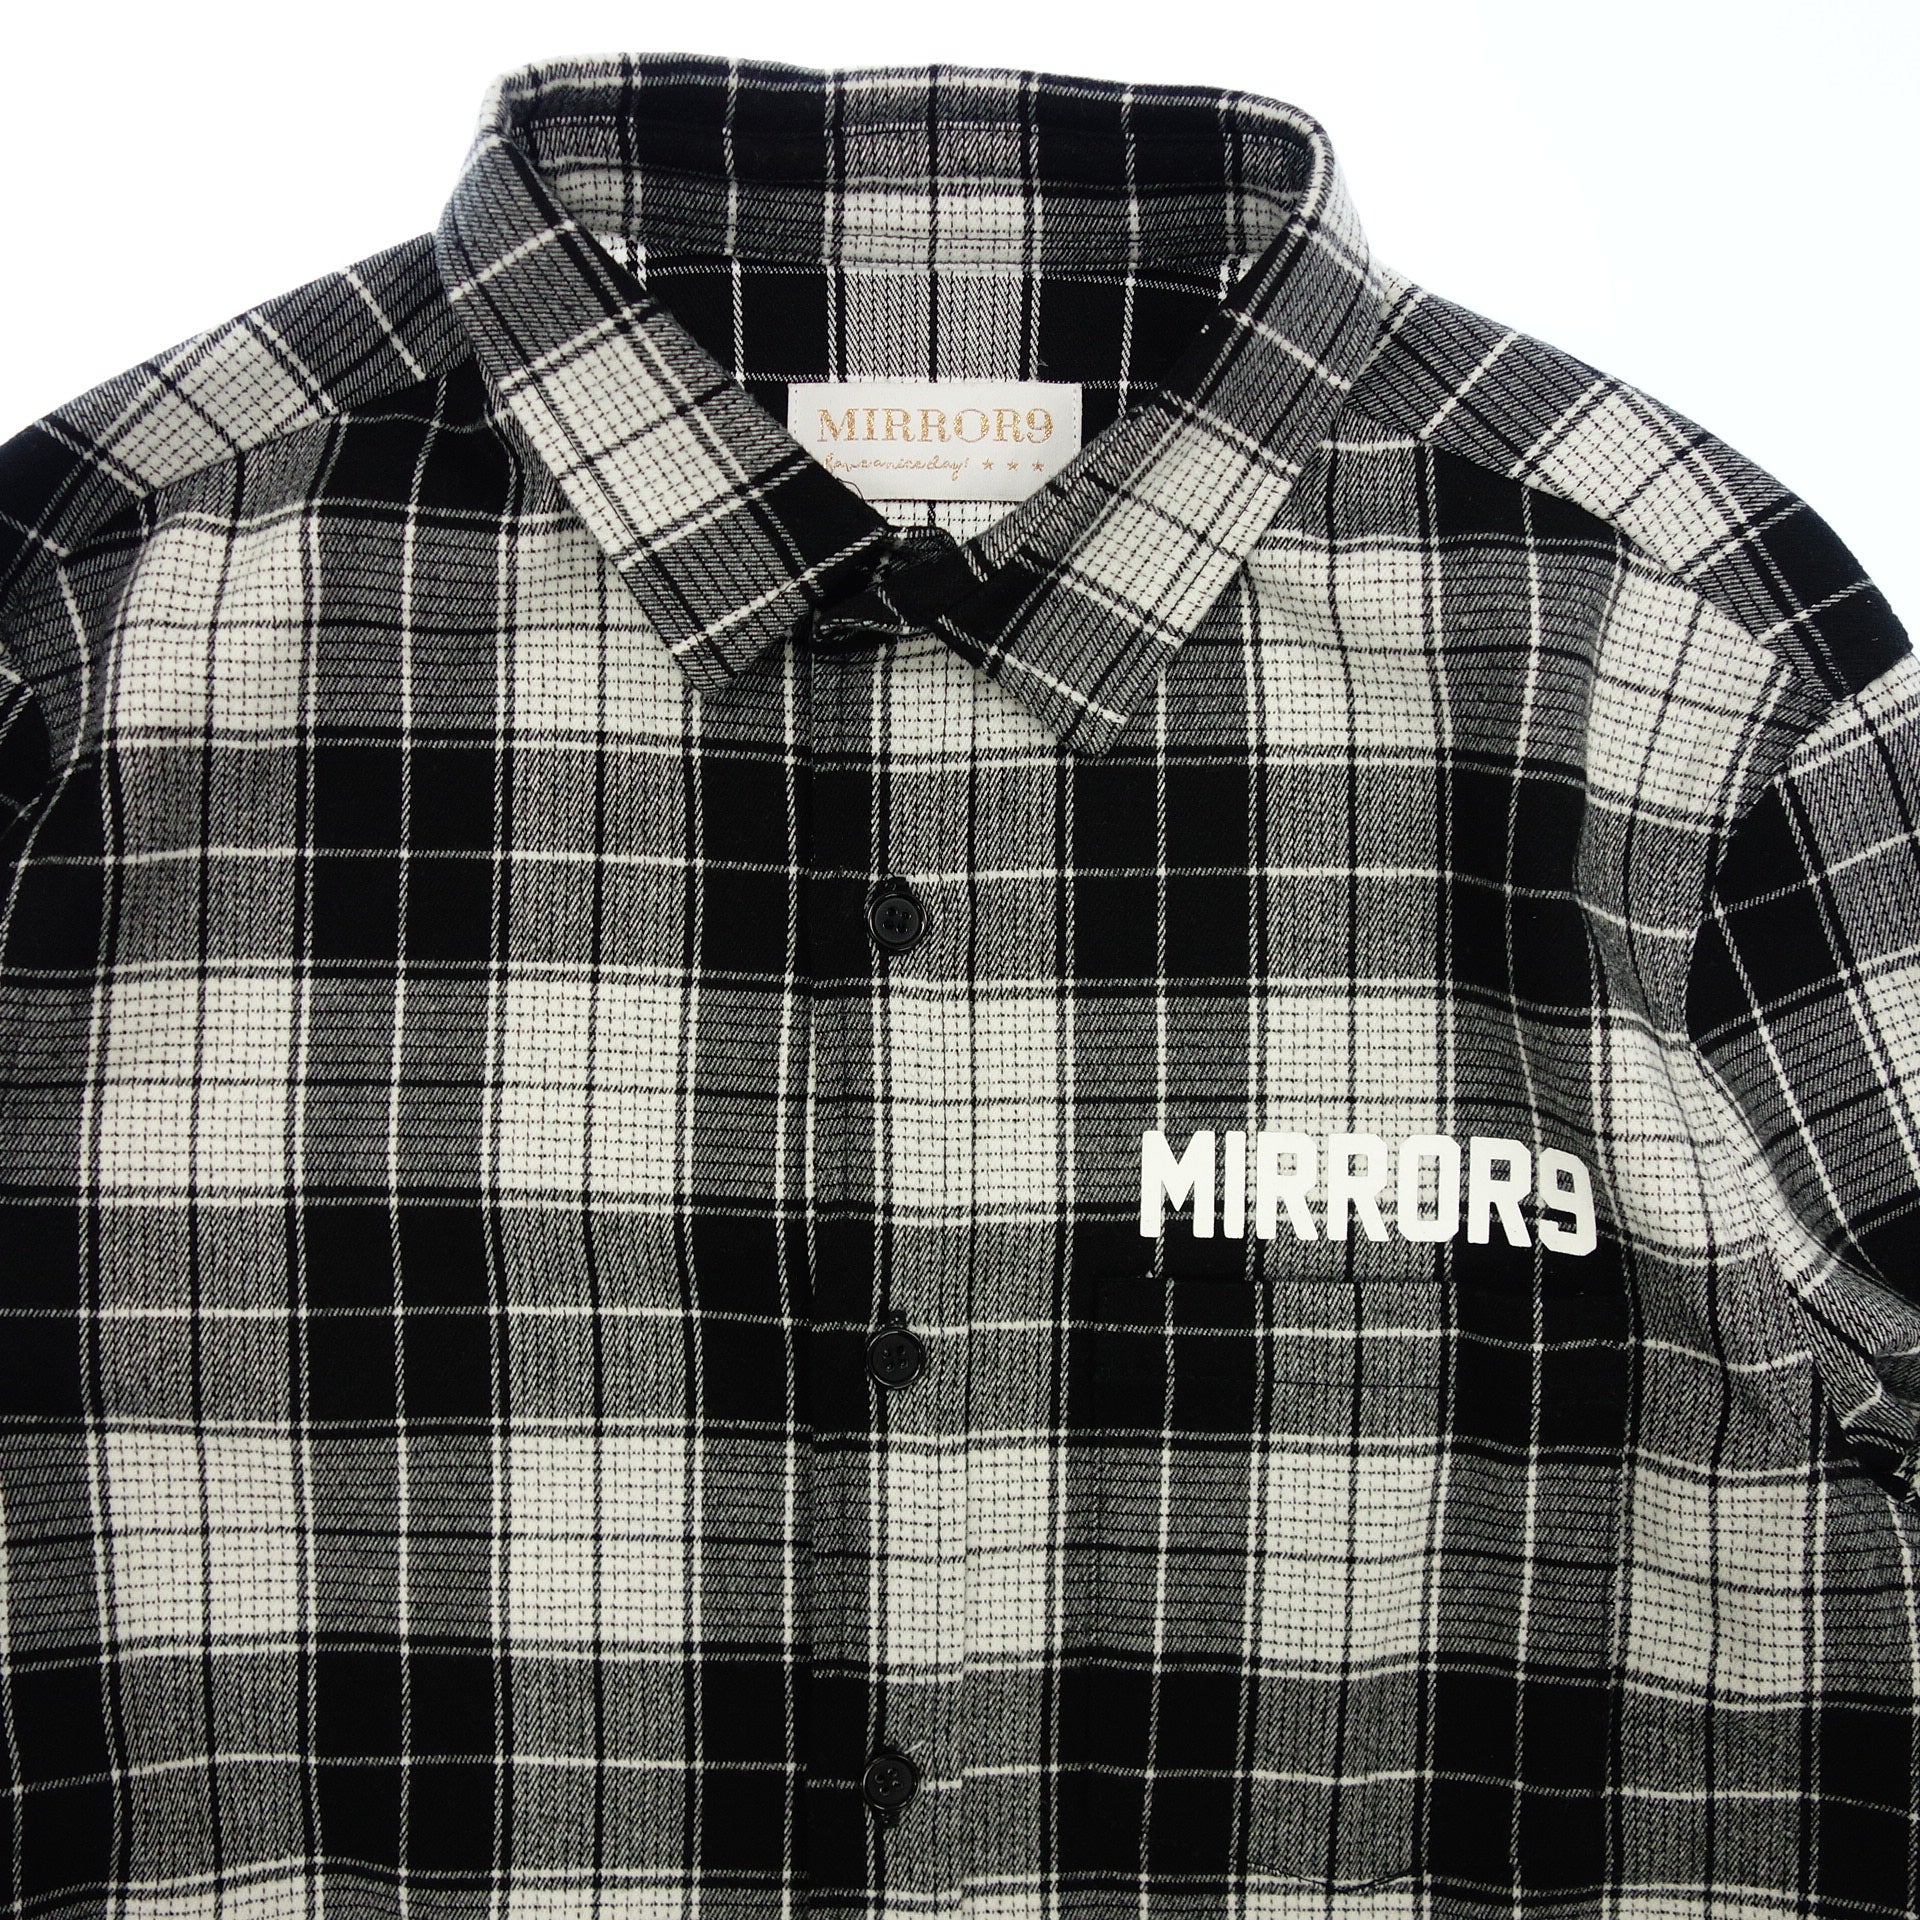 中古◆ミラーナイン チェックシャツ ネルシャツ バックプリント メンズ S 白×黒 MIRROR9【AFB30】